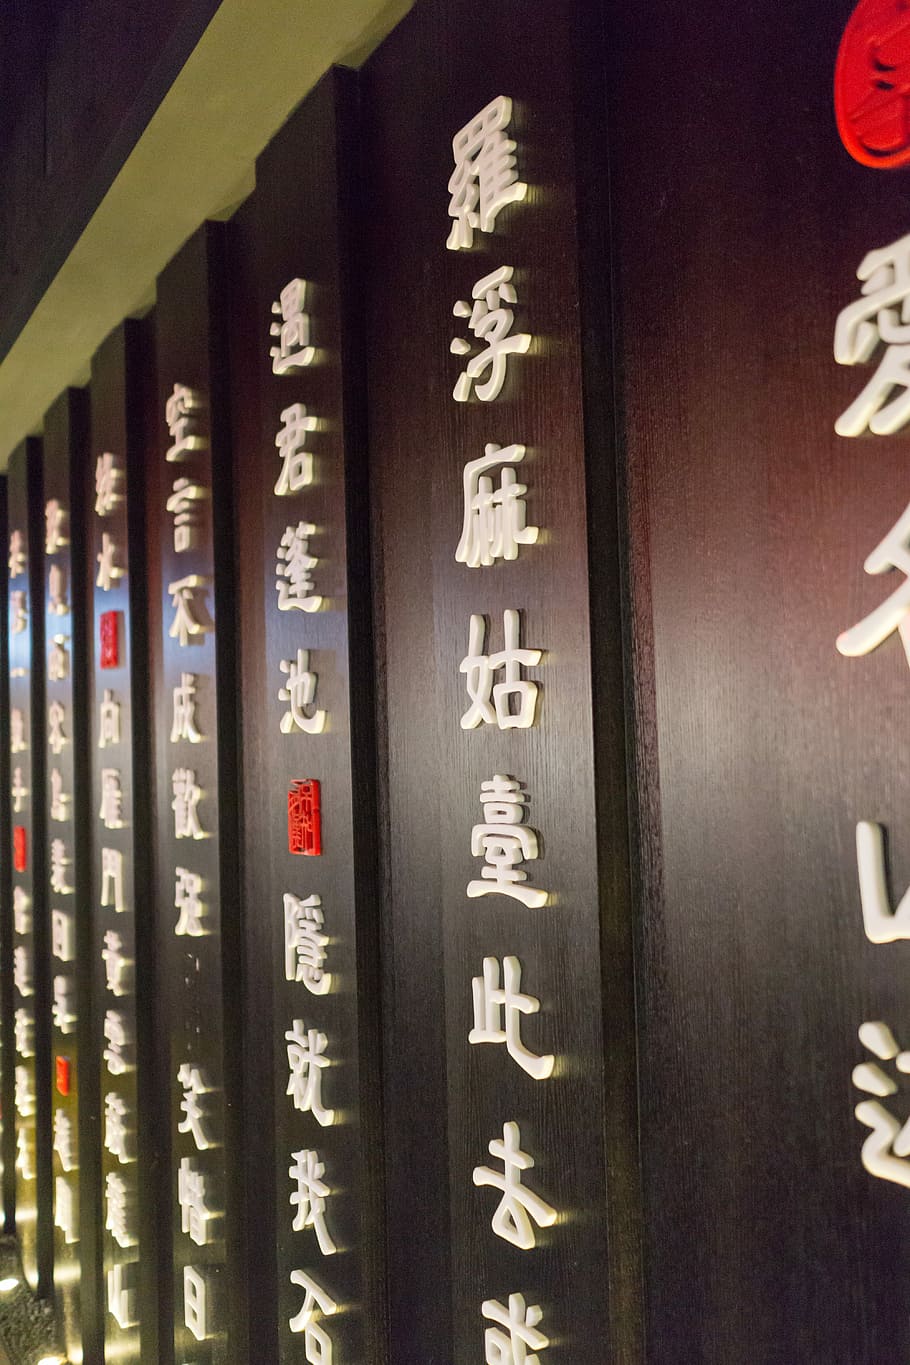 chino, caligrafía, tradicional, carácter, oriental, decoración, diseño, patrón, texto, comunicación